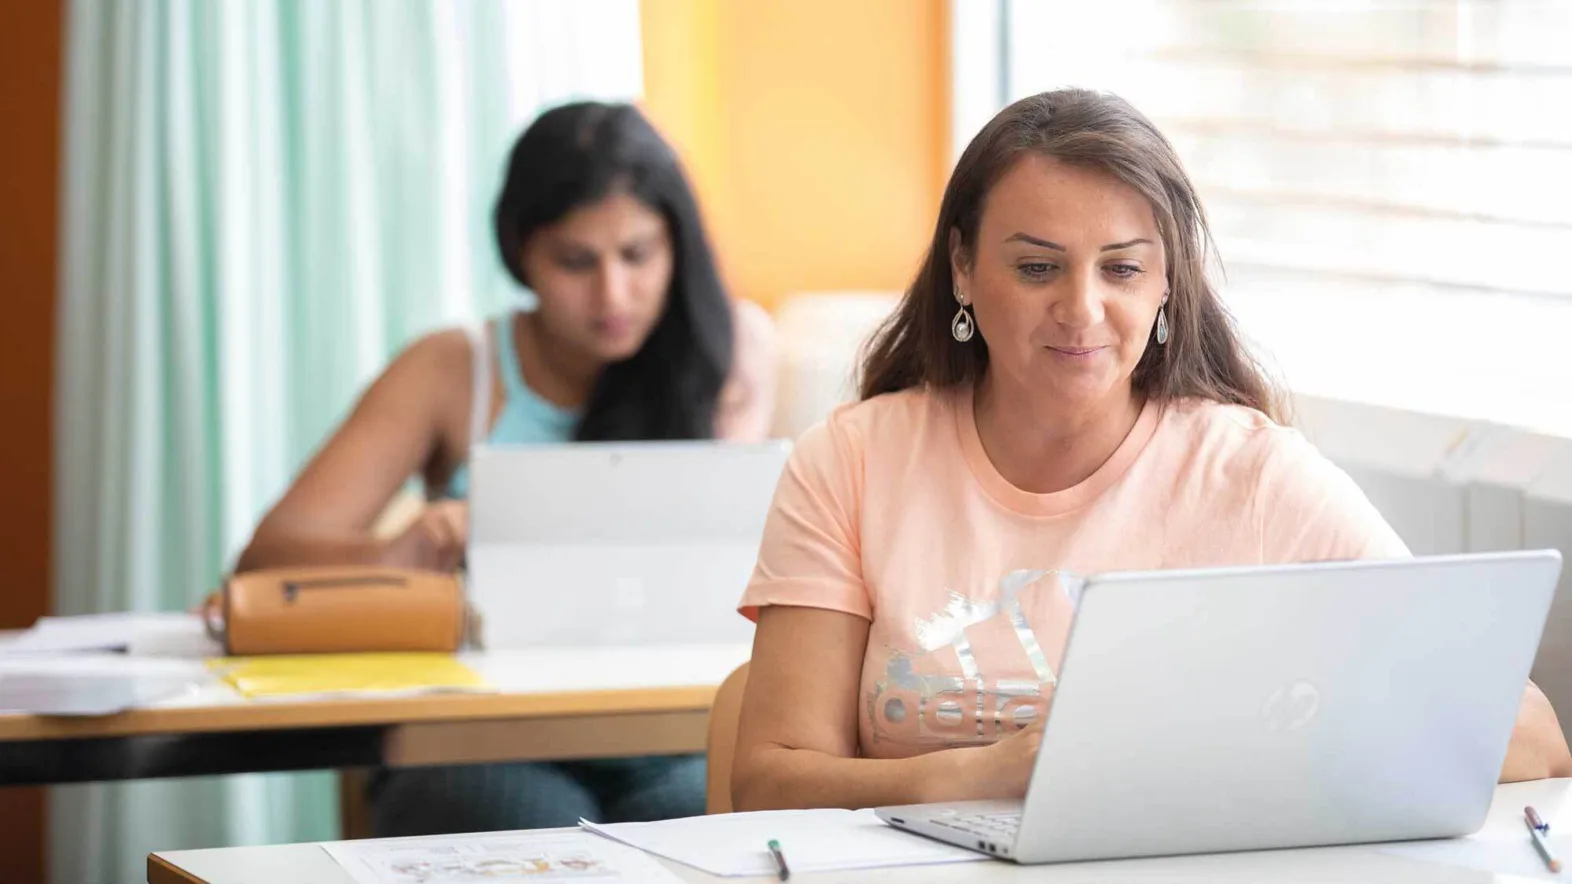 Deux femmes adultes à l'école avec un ordinateur portable devant elles.